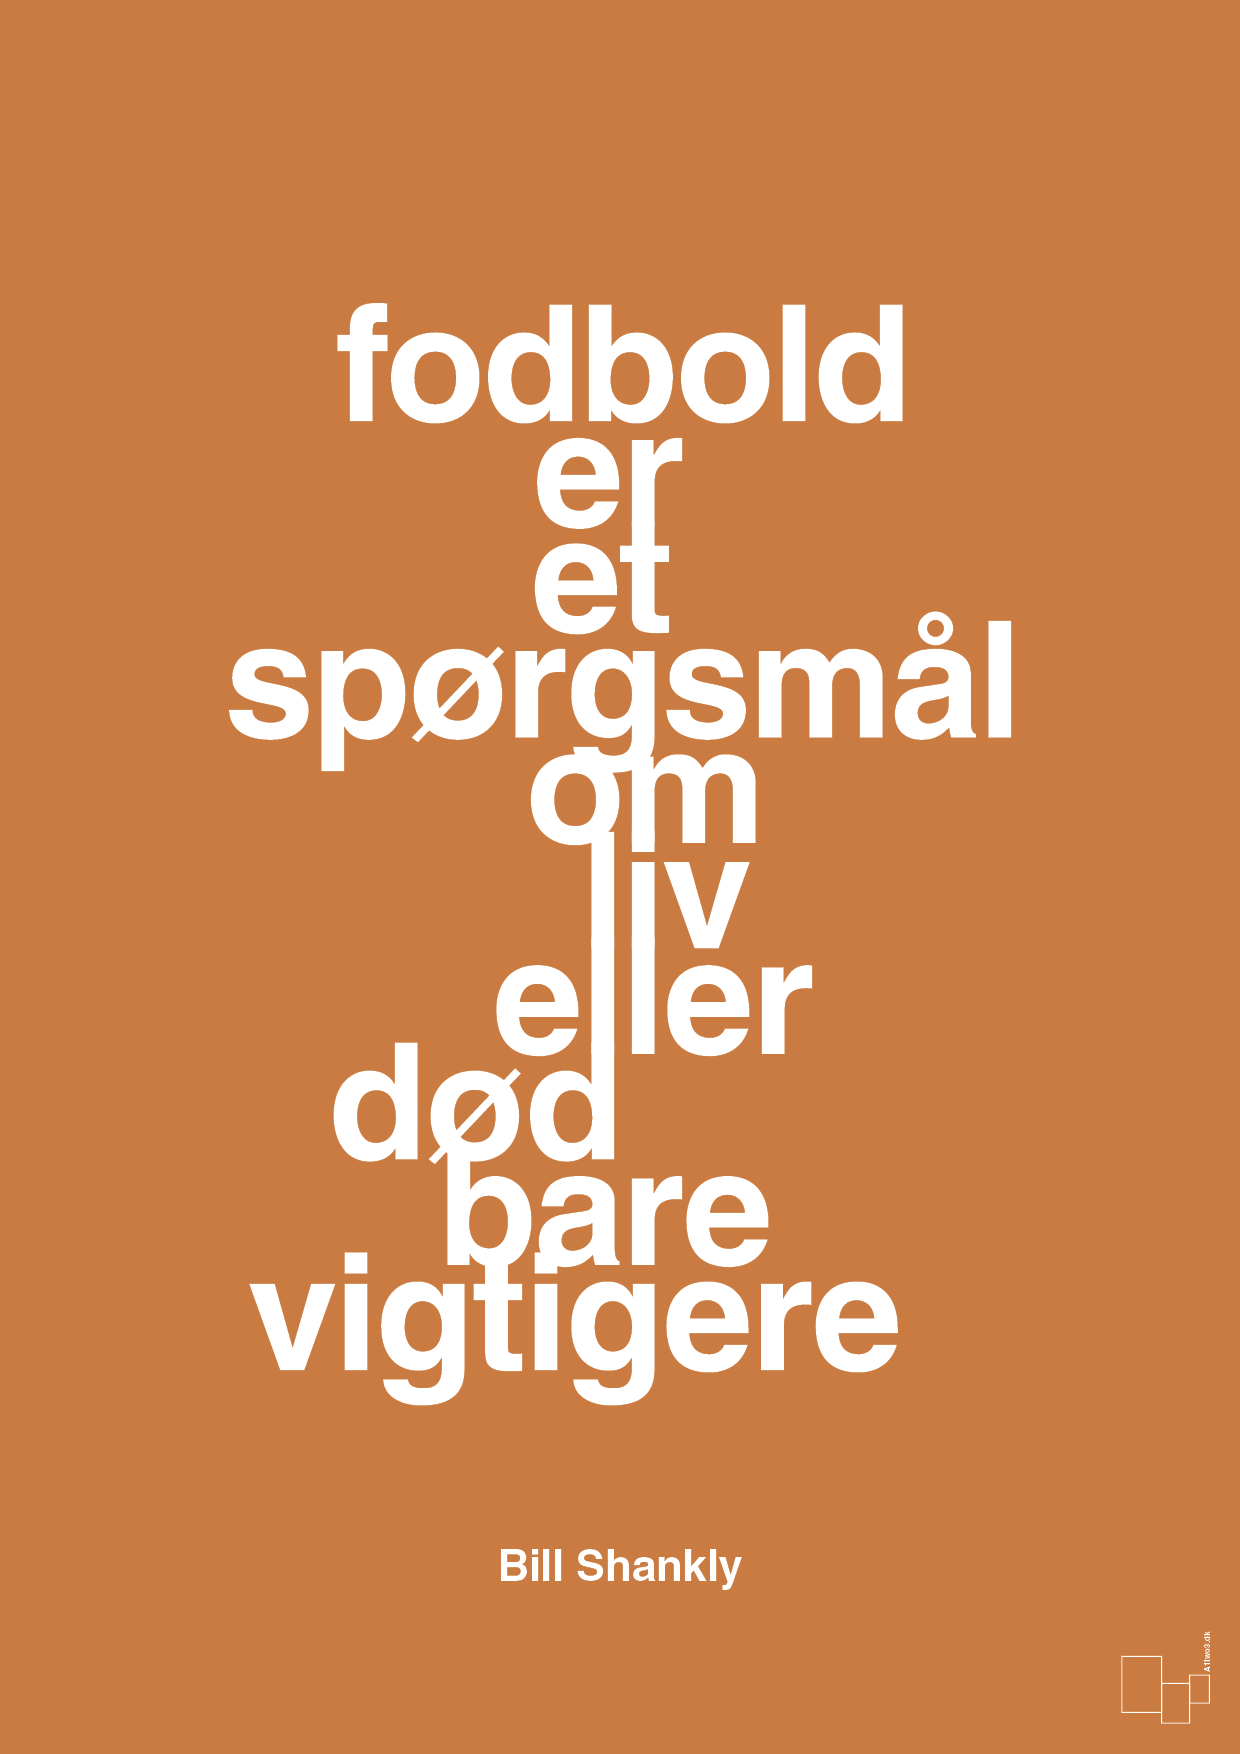 fodbold er et spørgsmål om liv eller død bare vigtigere - Plakat med Citater i Rumba Orange